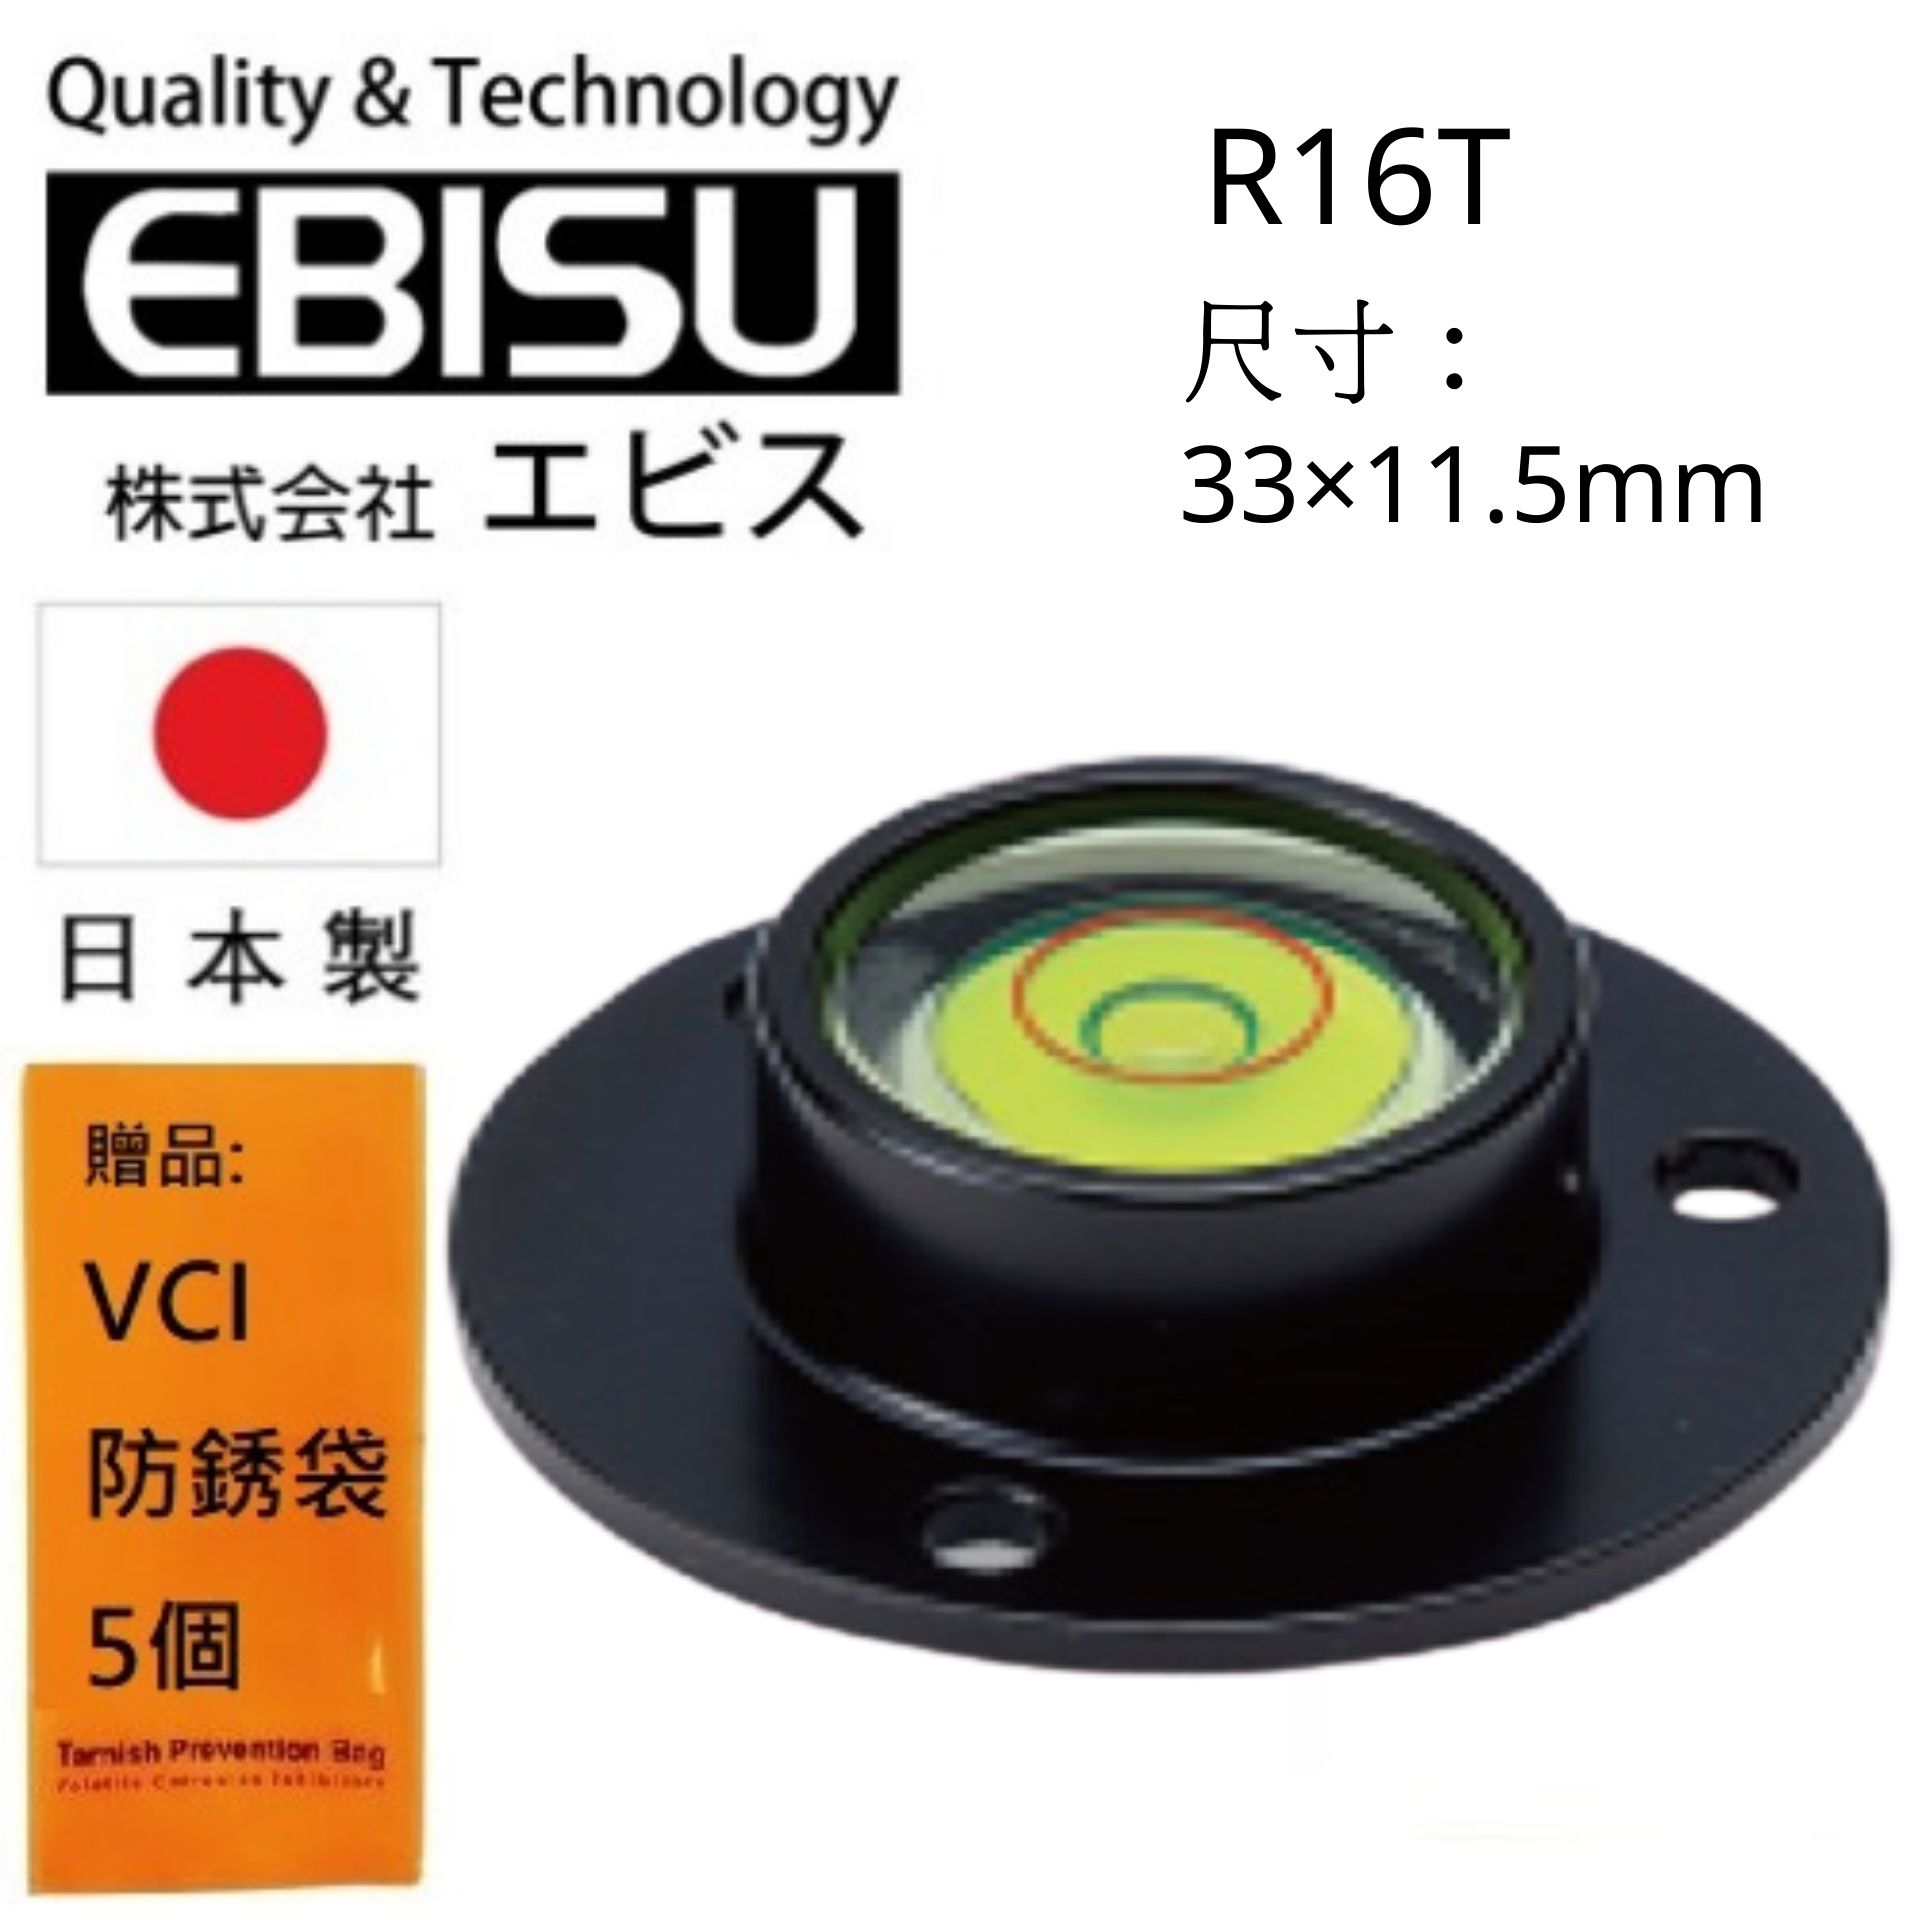 【日本EBISU】 丸型水平氣泡管-鋁框 33×11.5mm R16T 造型美觀，體積輕巧，攜帶方便